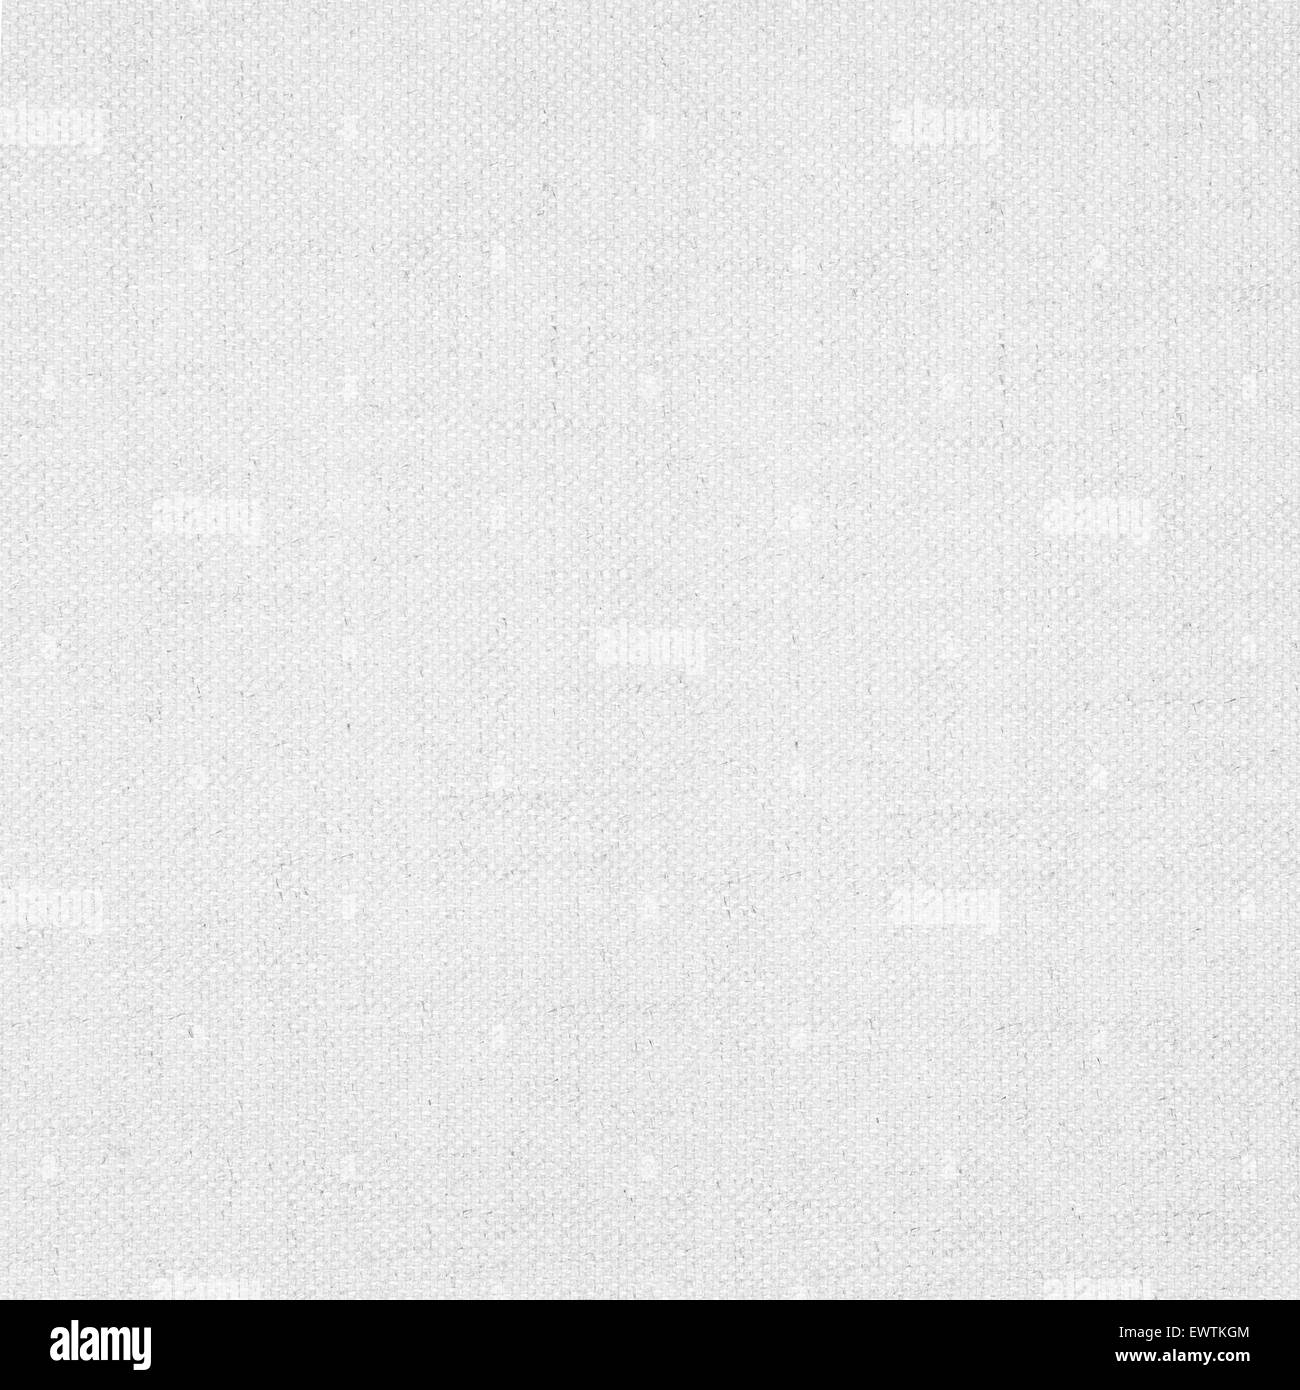 Tela bianca su sfondo o grid pattern texture di lino Foto Stock